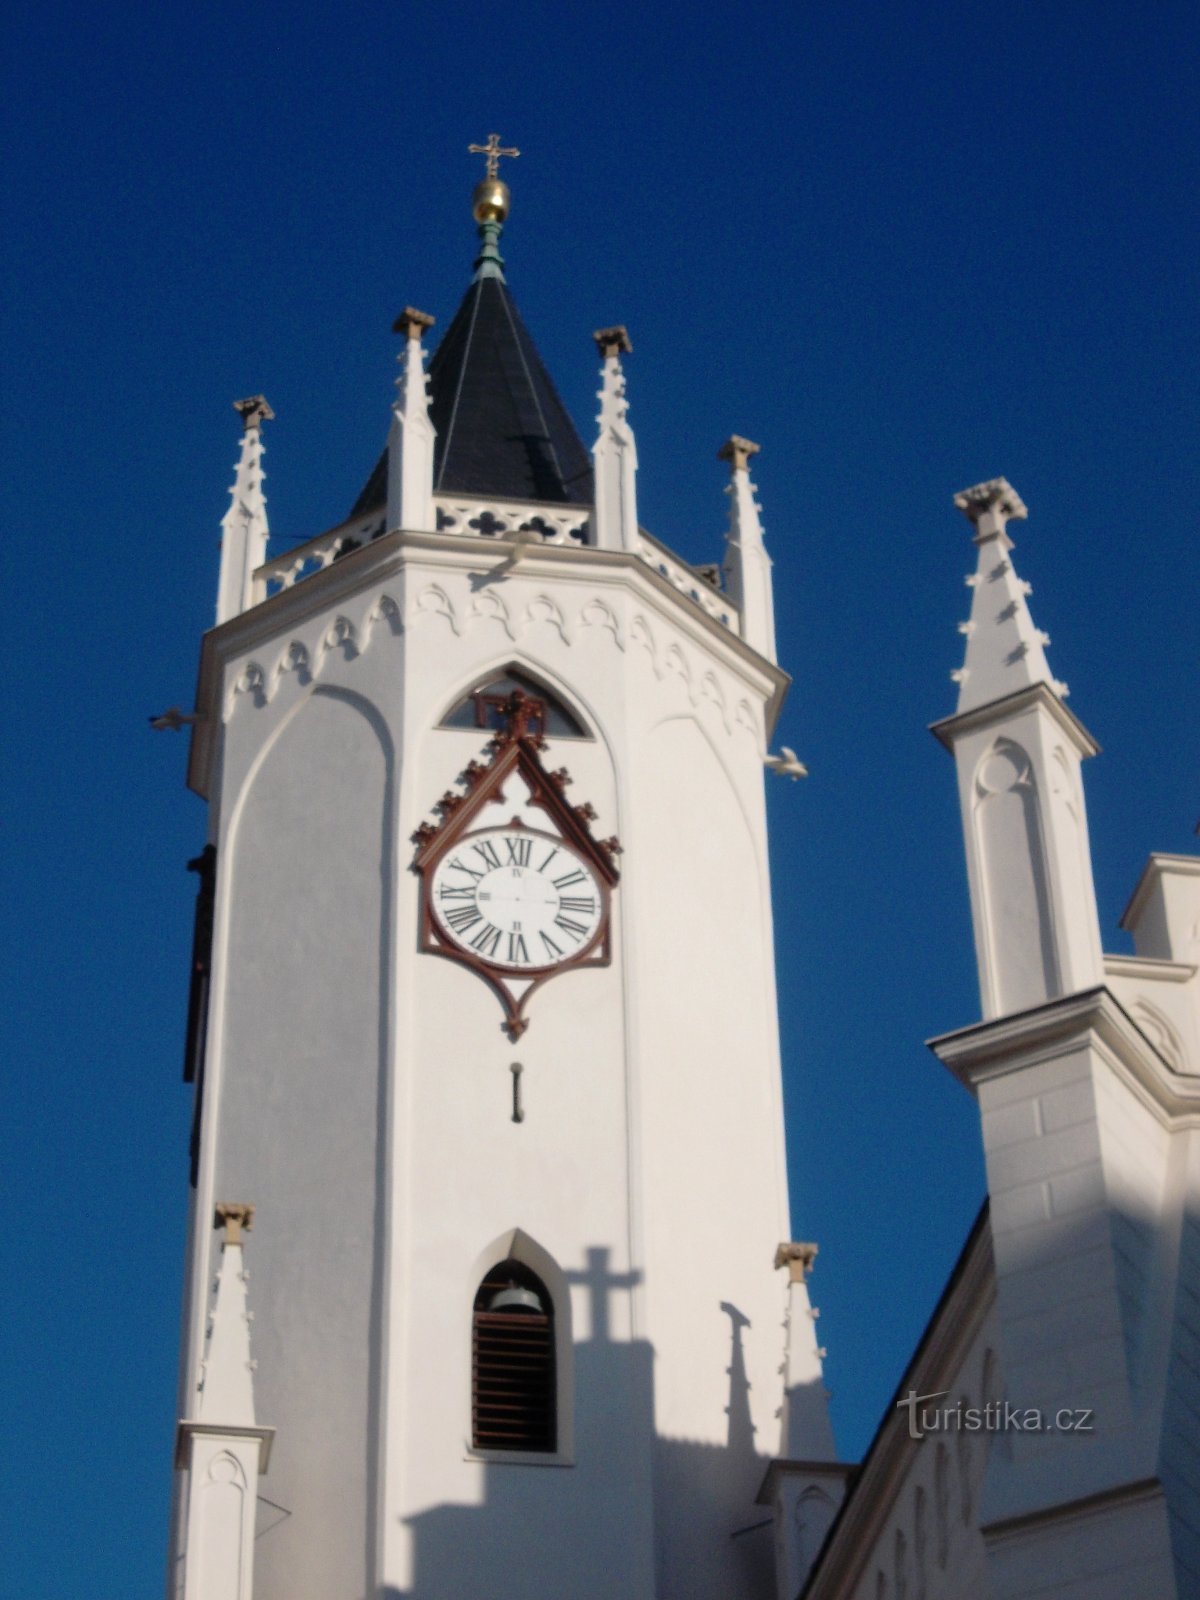 tháp đồng hồ của nhà thờ